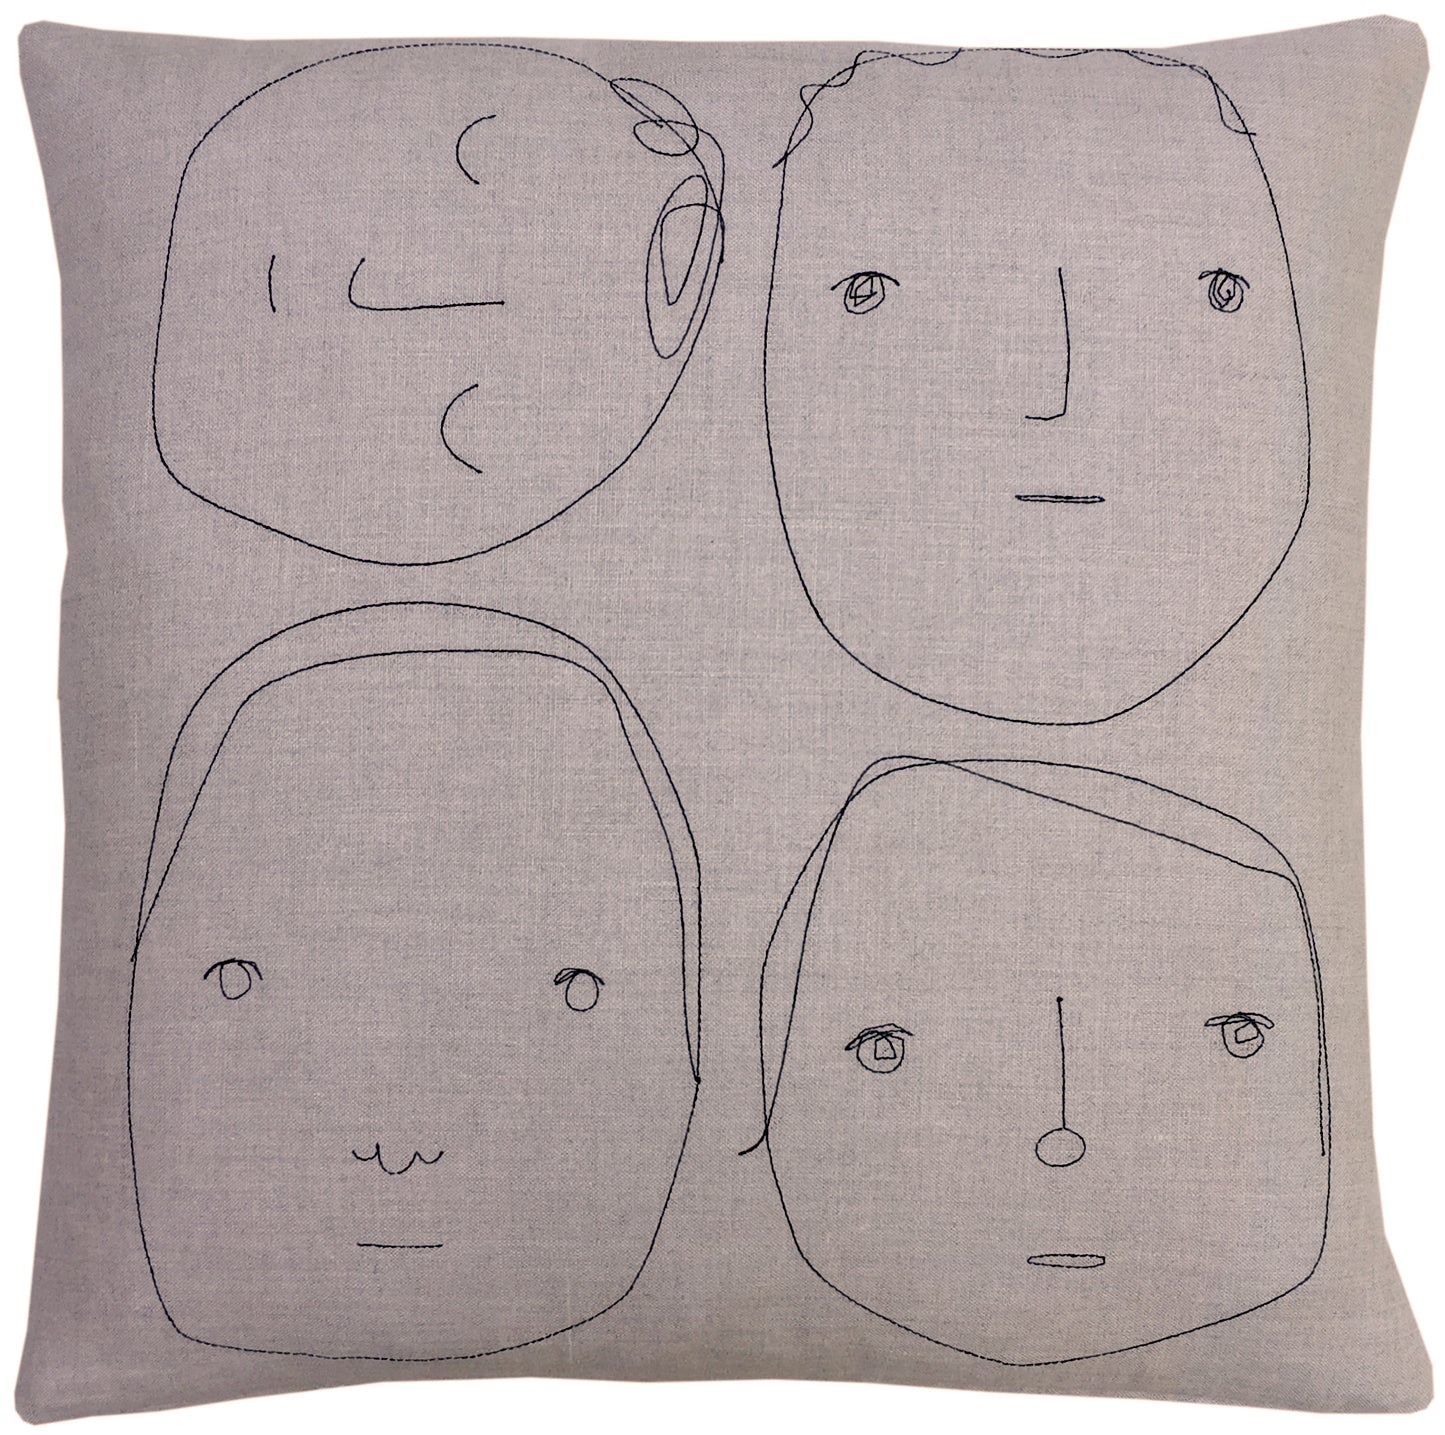 Fourheads Pillow